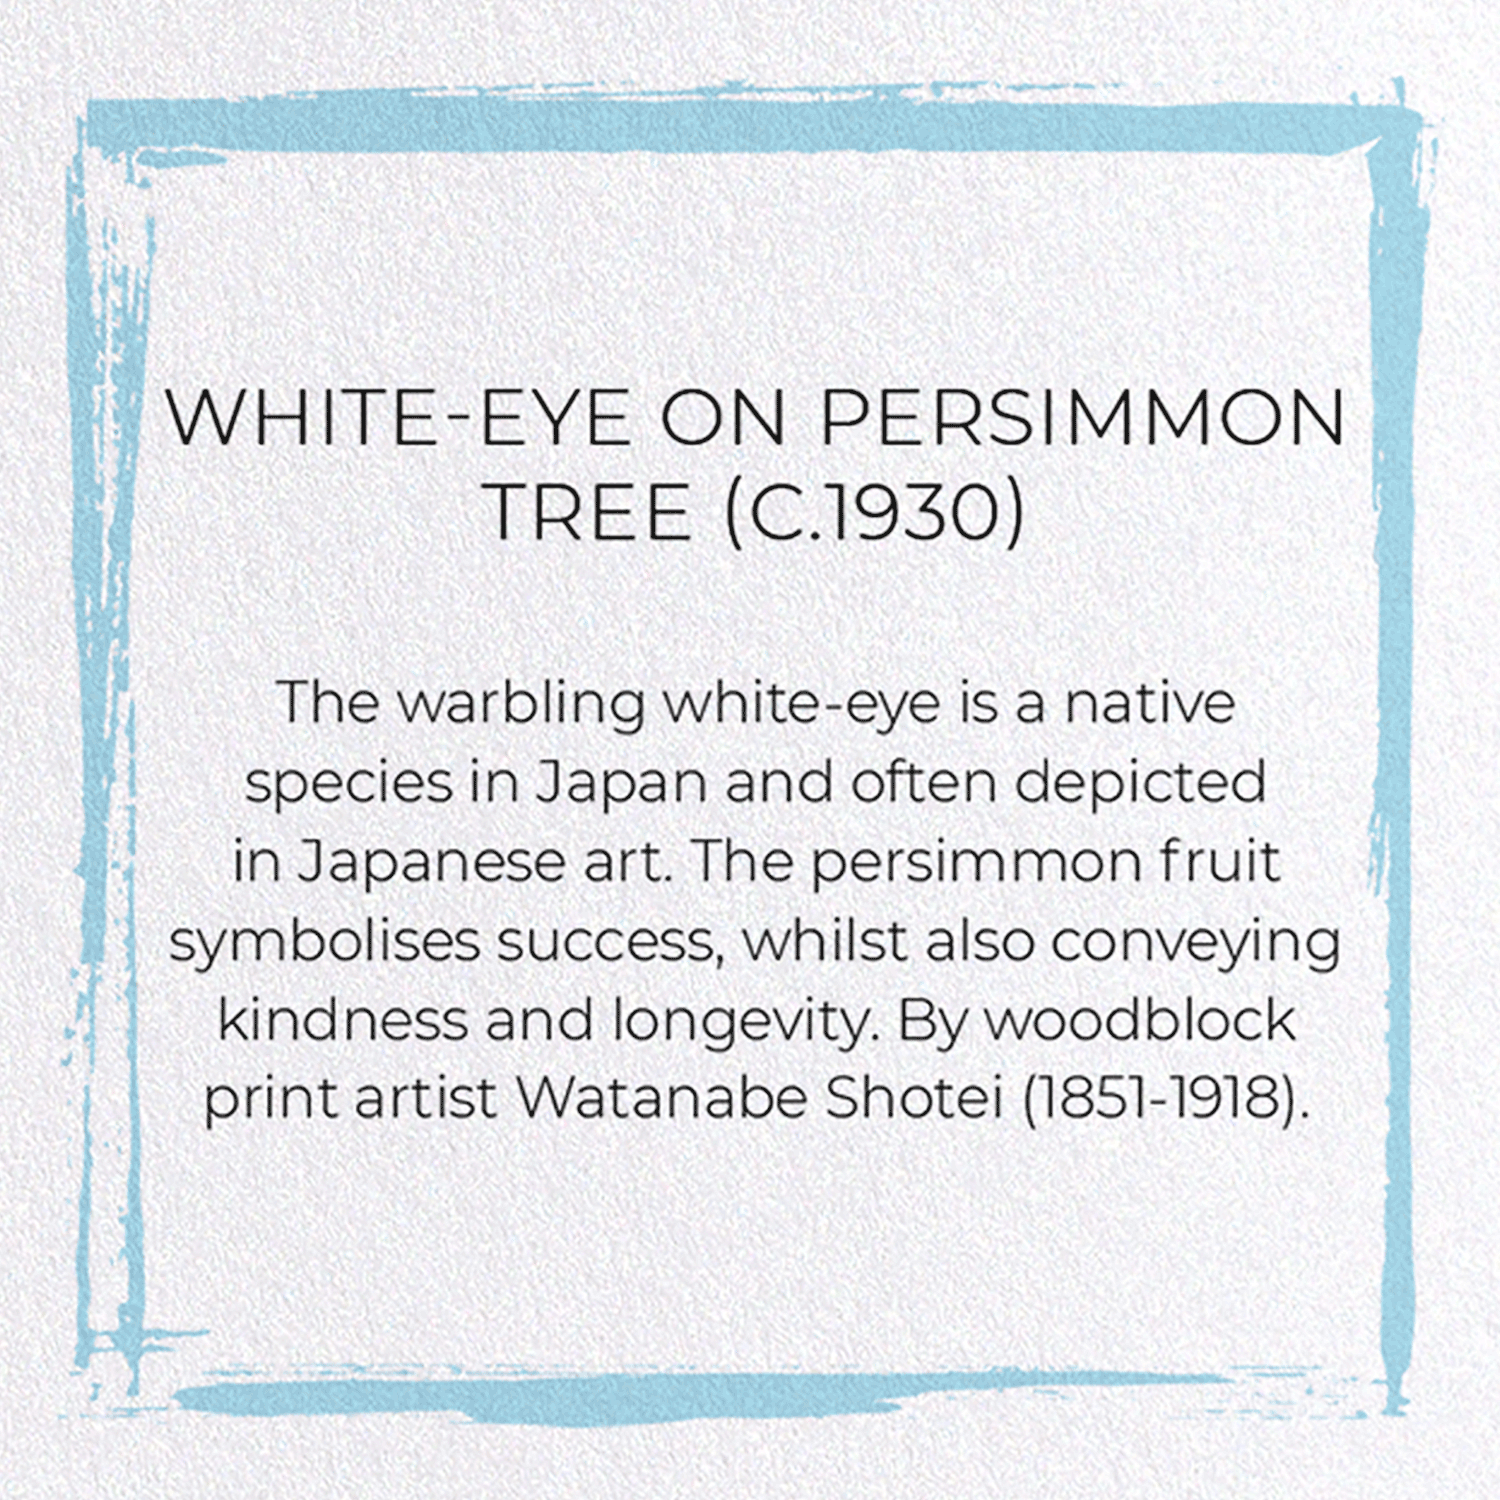 WHITE-EYE ON PERSIMMON TREE (C.1930)